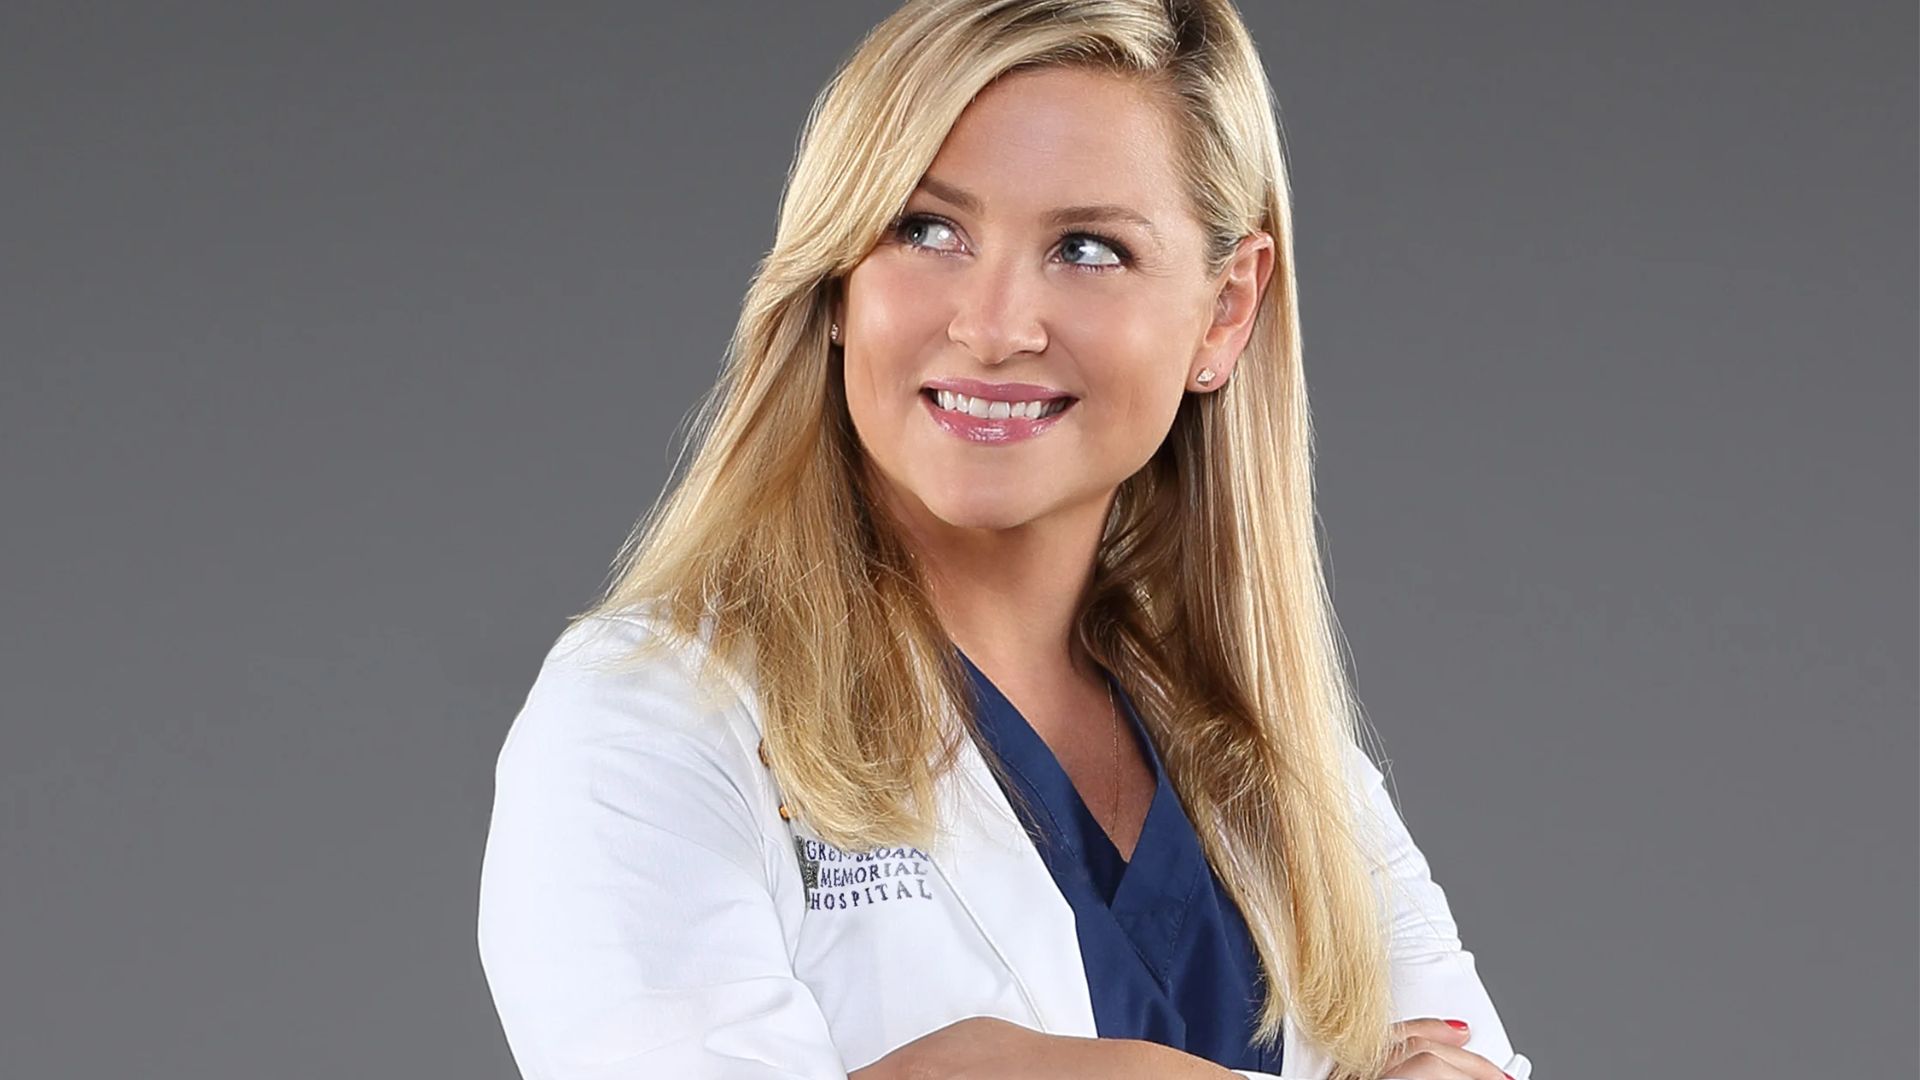 Jessica Capshaw fez teste para outras personagens em "Grey's Anatomy" antes de abocanhar o papel de Arizona Robbins (Foto: Divulgação/ABC)